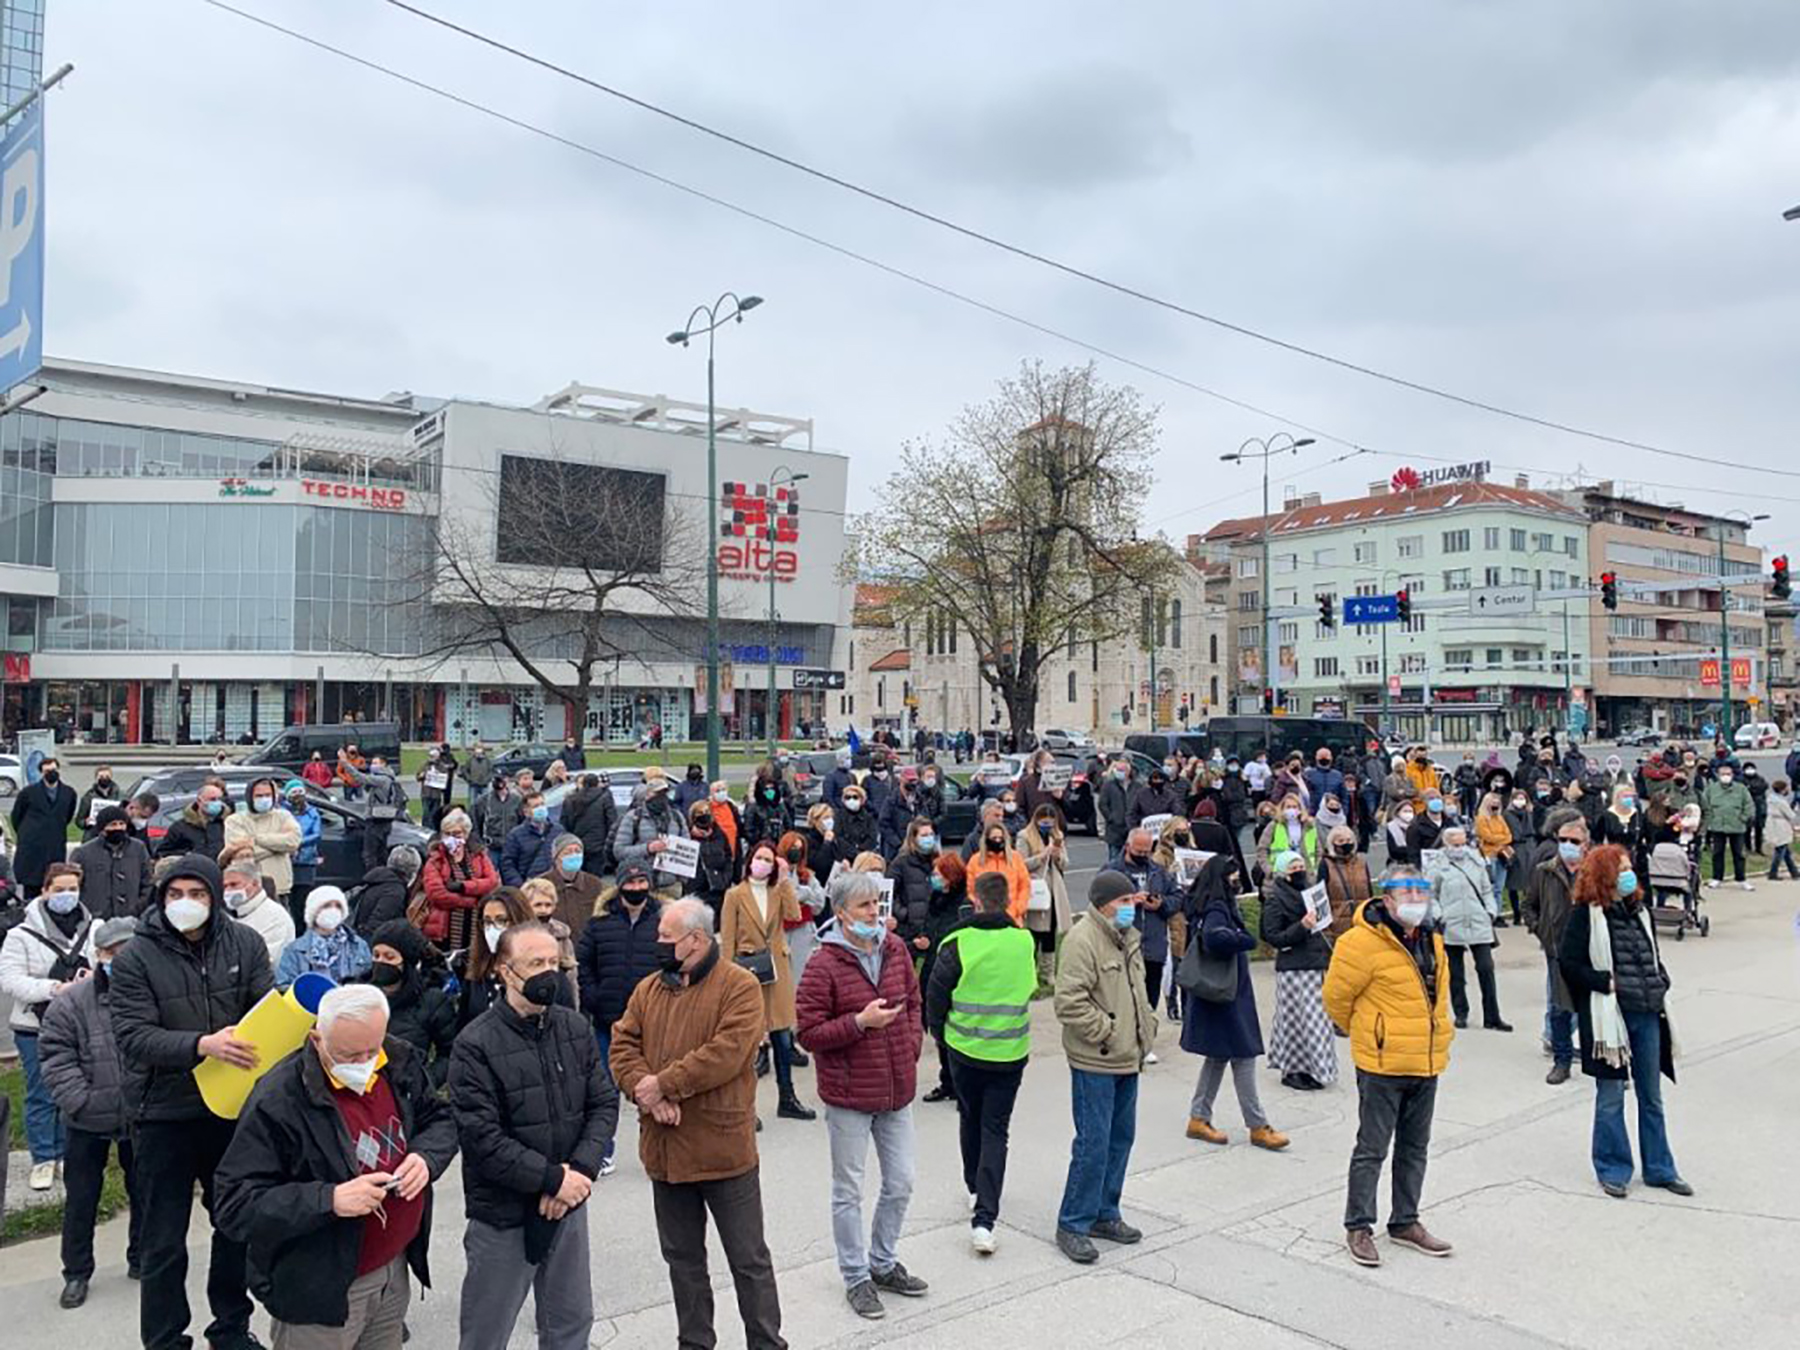 Sarajevo protest